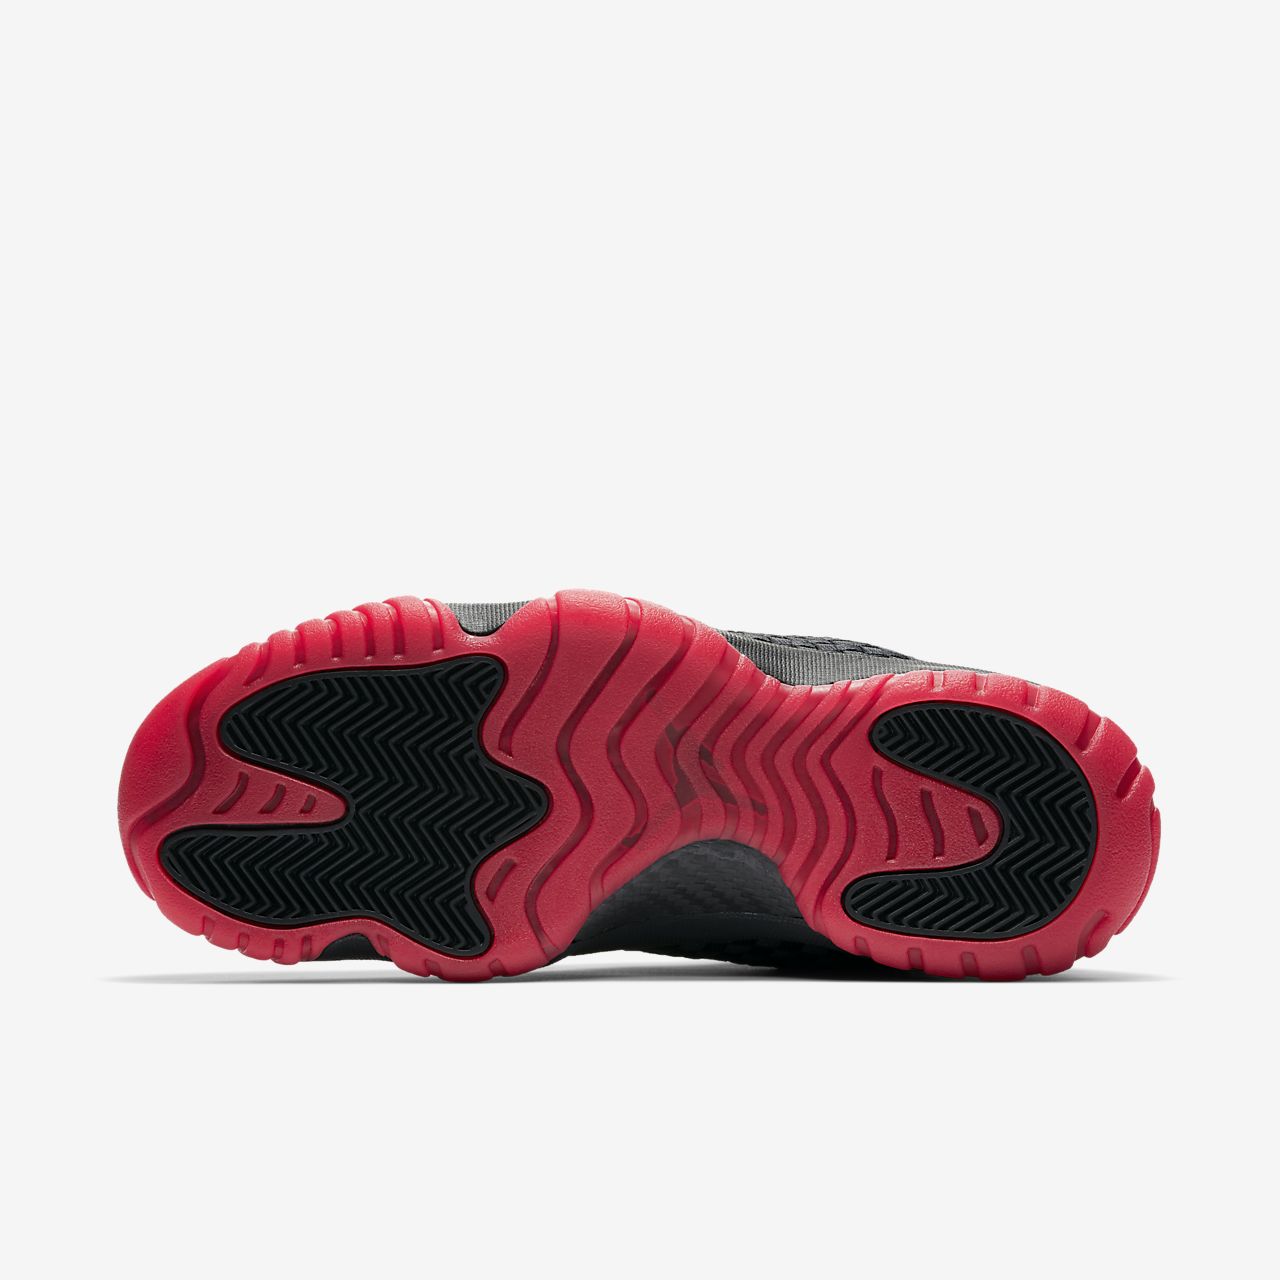 Nike Air Jordan Future - Jordan Sko - Sort/Hvide/Rød | DK-86403